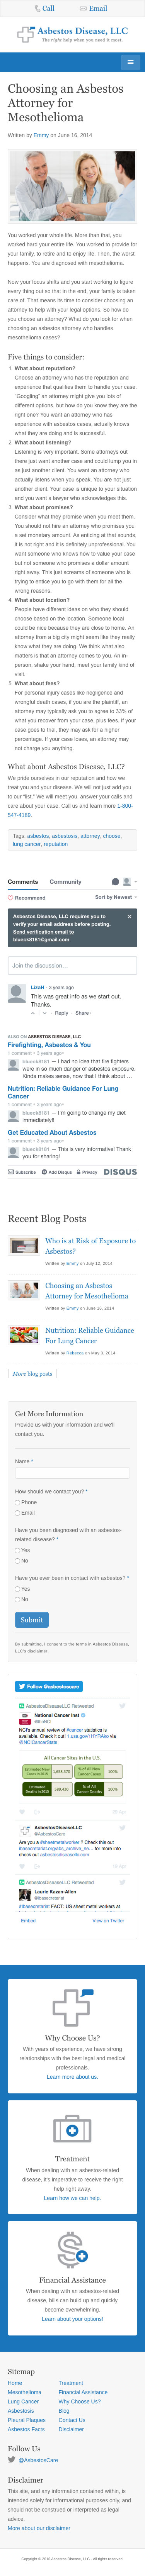 Asbestos Disease, LLC - Sample Page - iPhone View